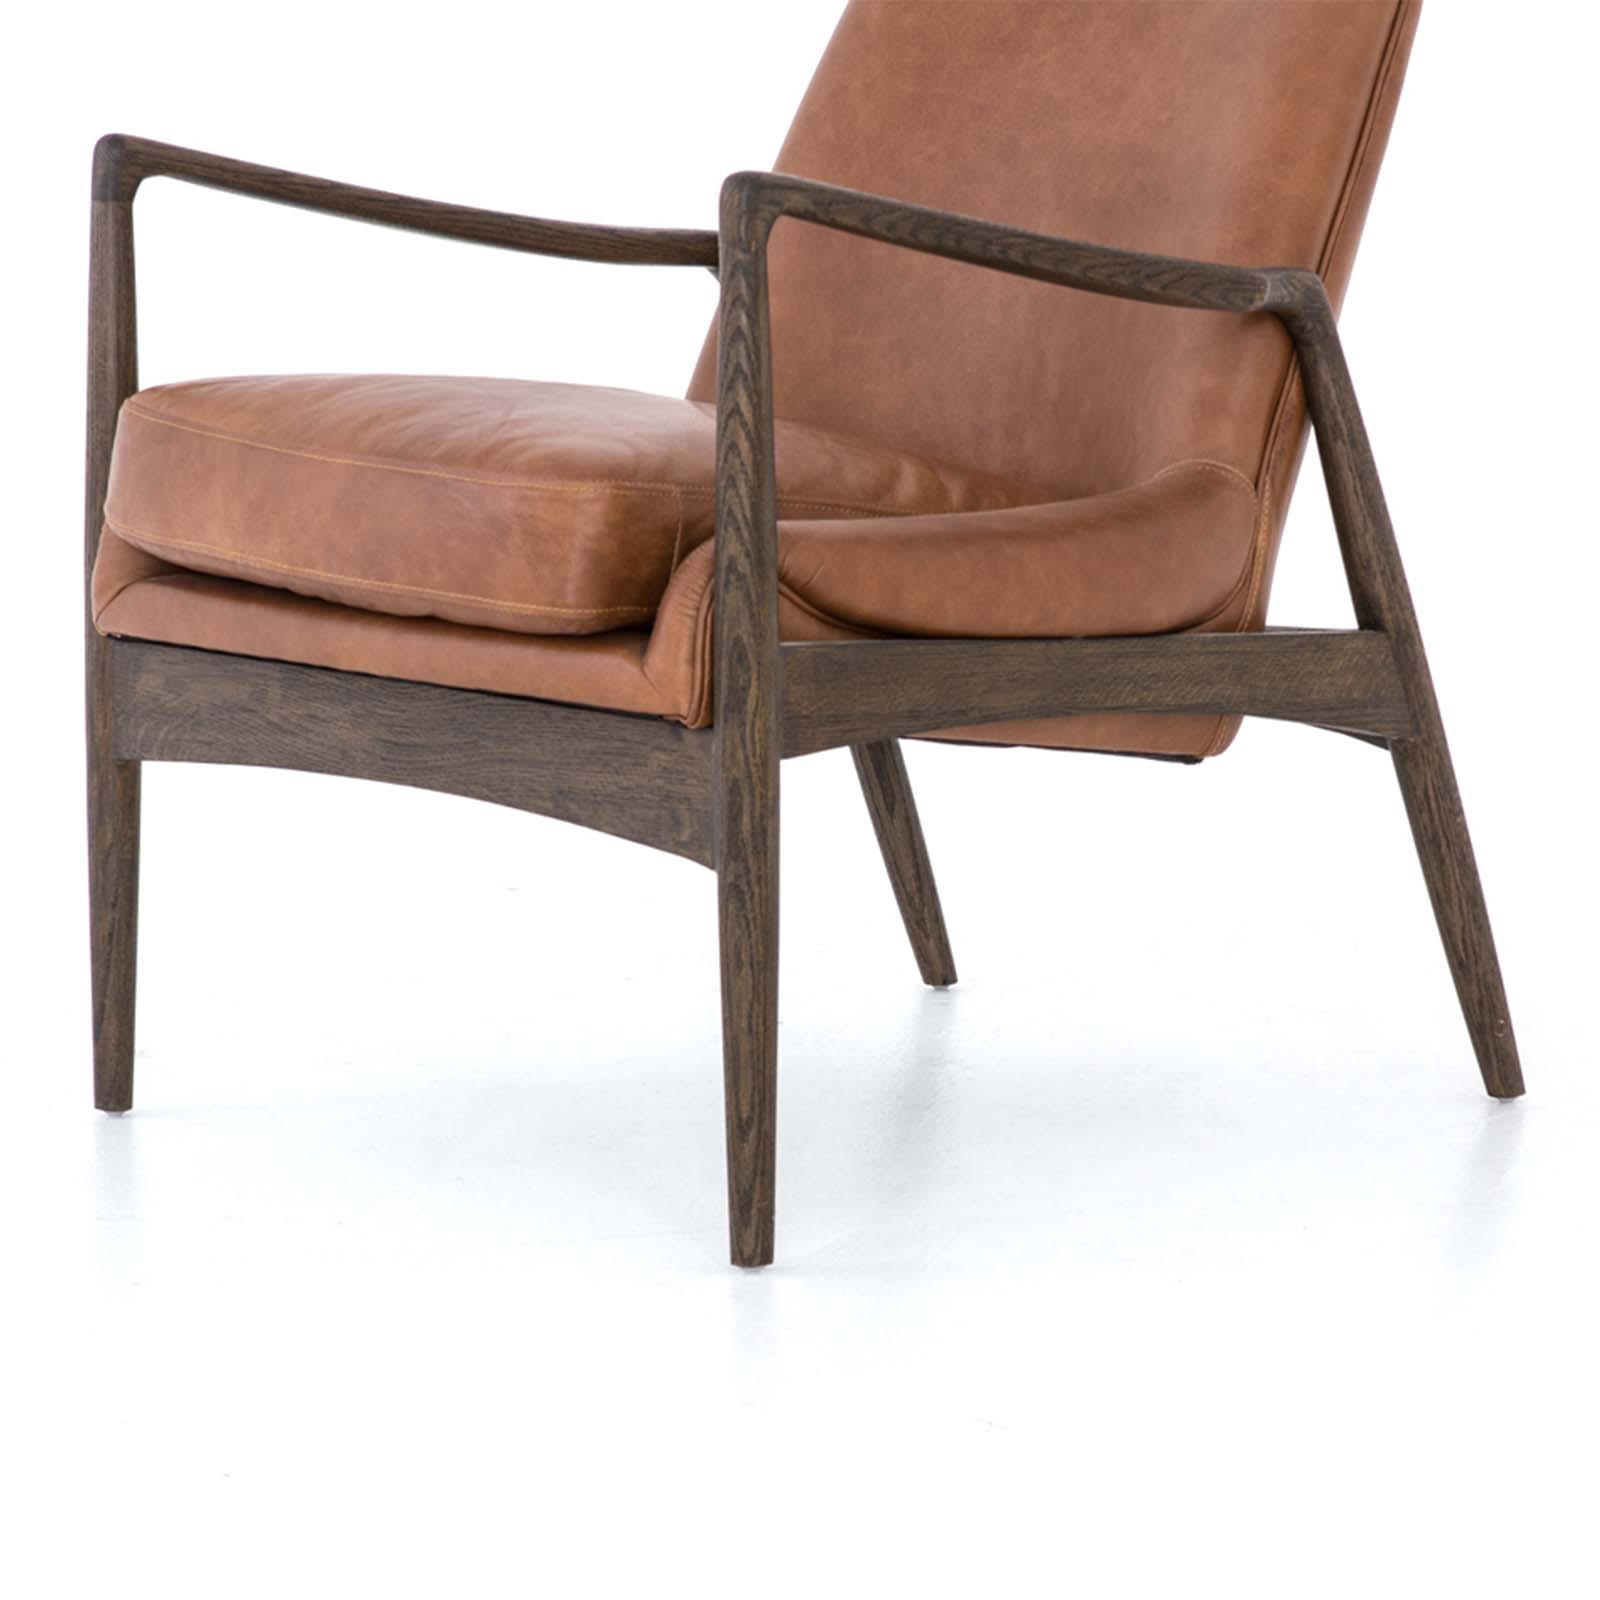 Edwyn Leather Chair